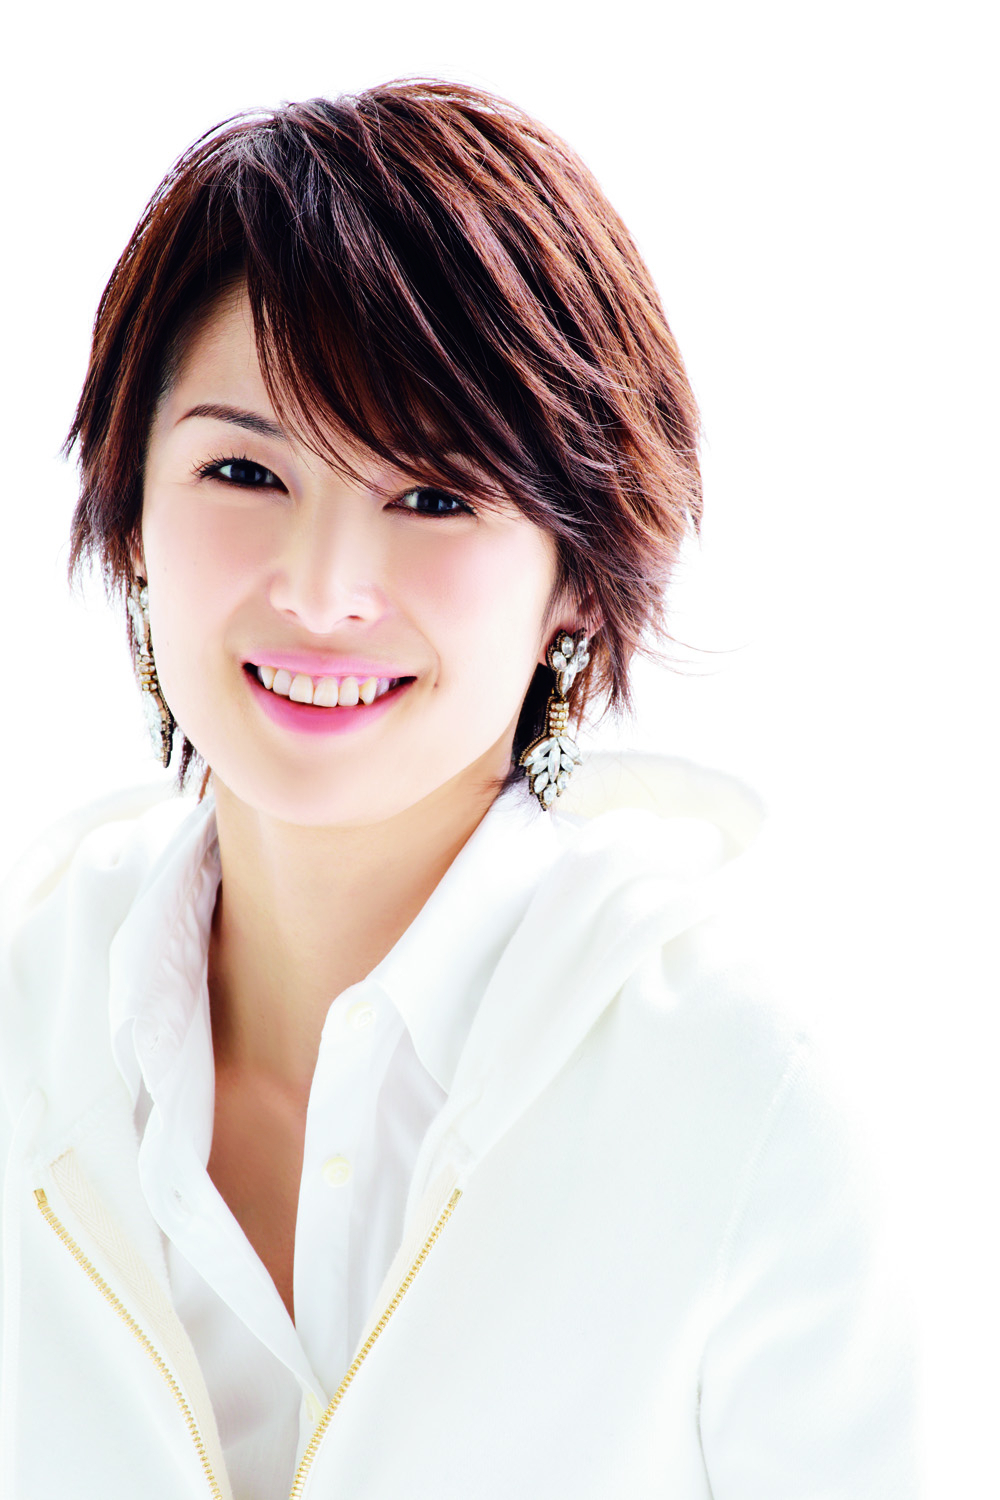 どんな大変なときでも 笑顔でいたい 笑顔は人を幸せにするから 吉瀬美智子スペシャルインタビュー Mamagirl15冬号は11月25日 火 発売 株式会社エムオン エンタテインメントのプレスリリース